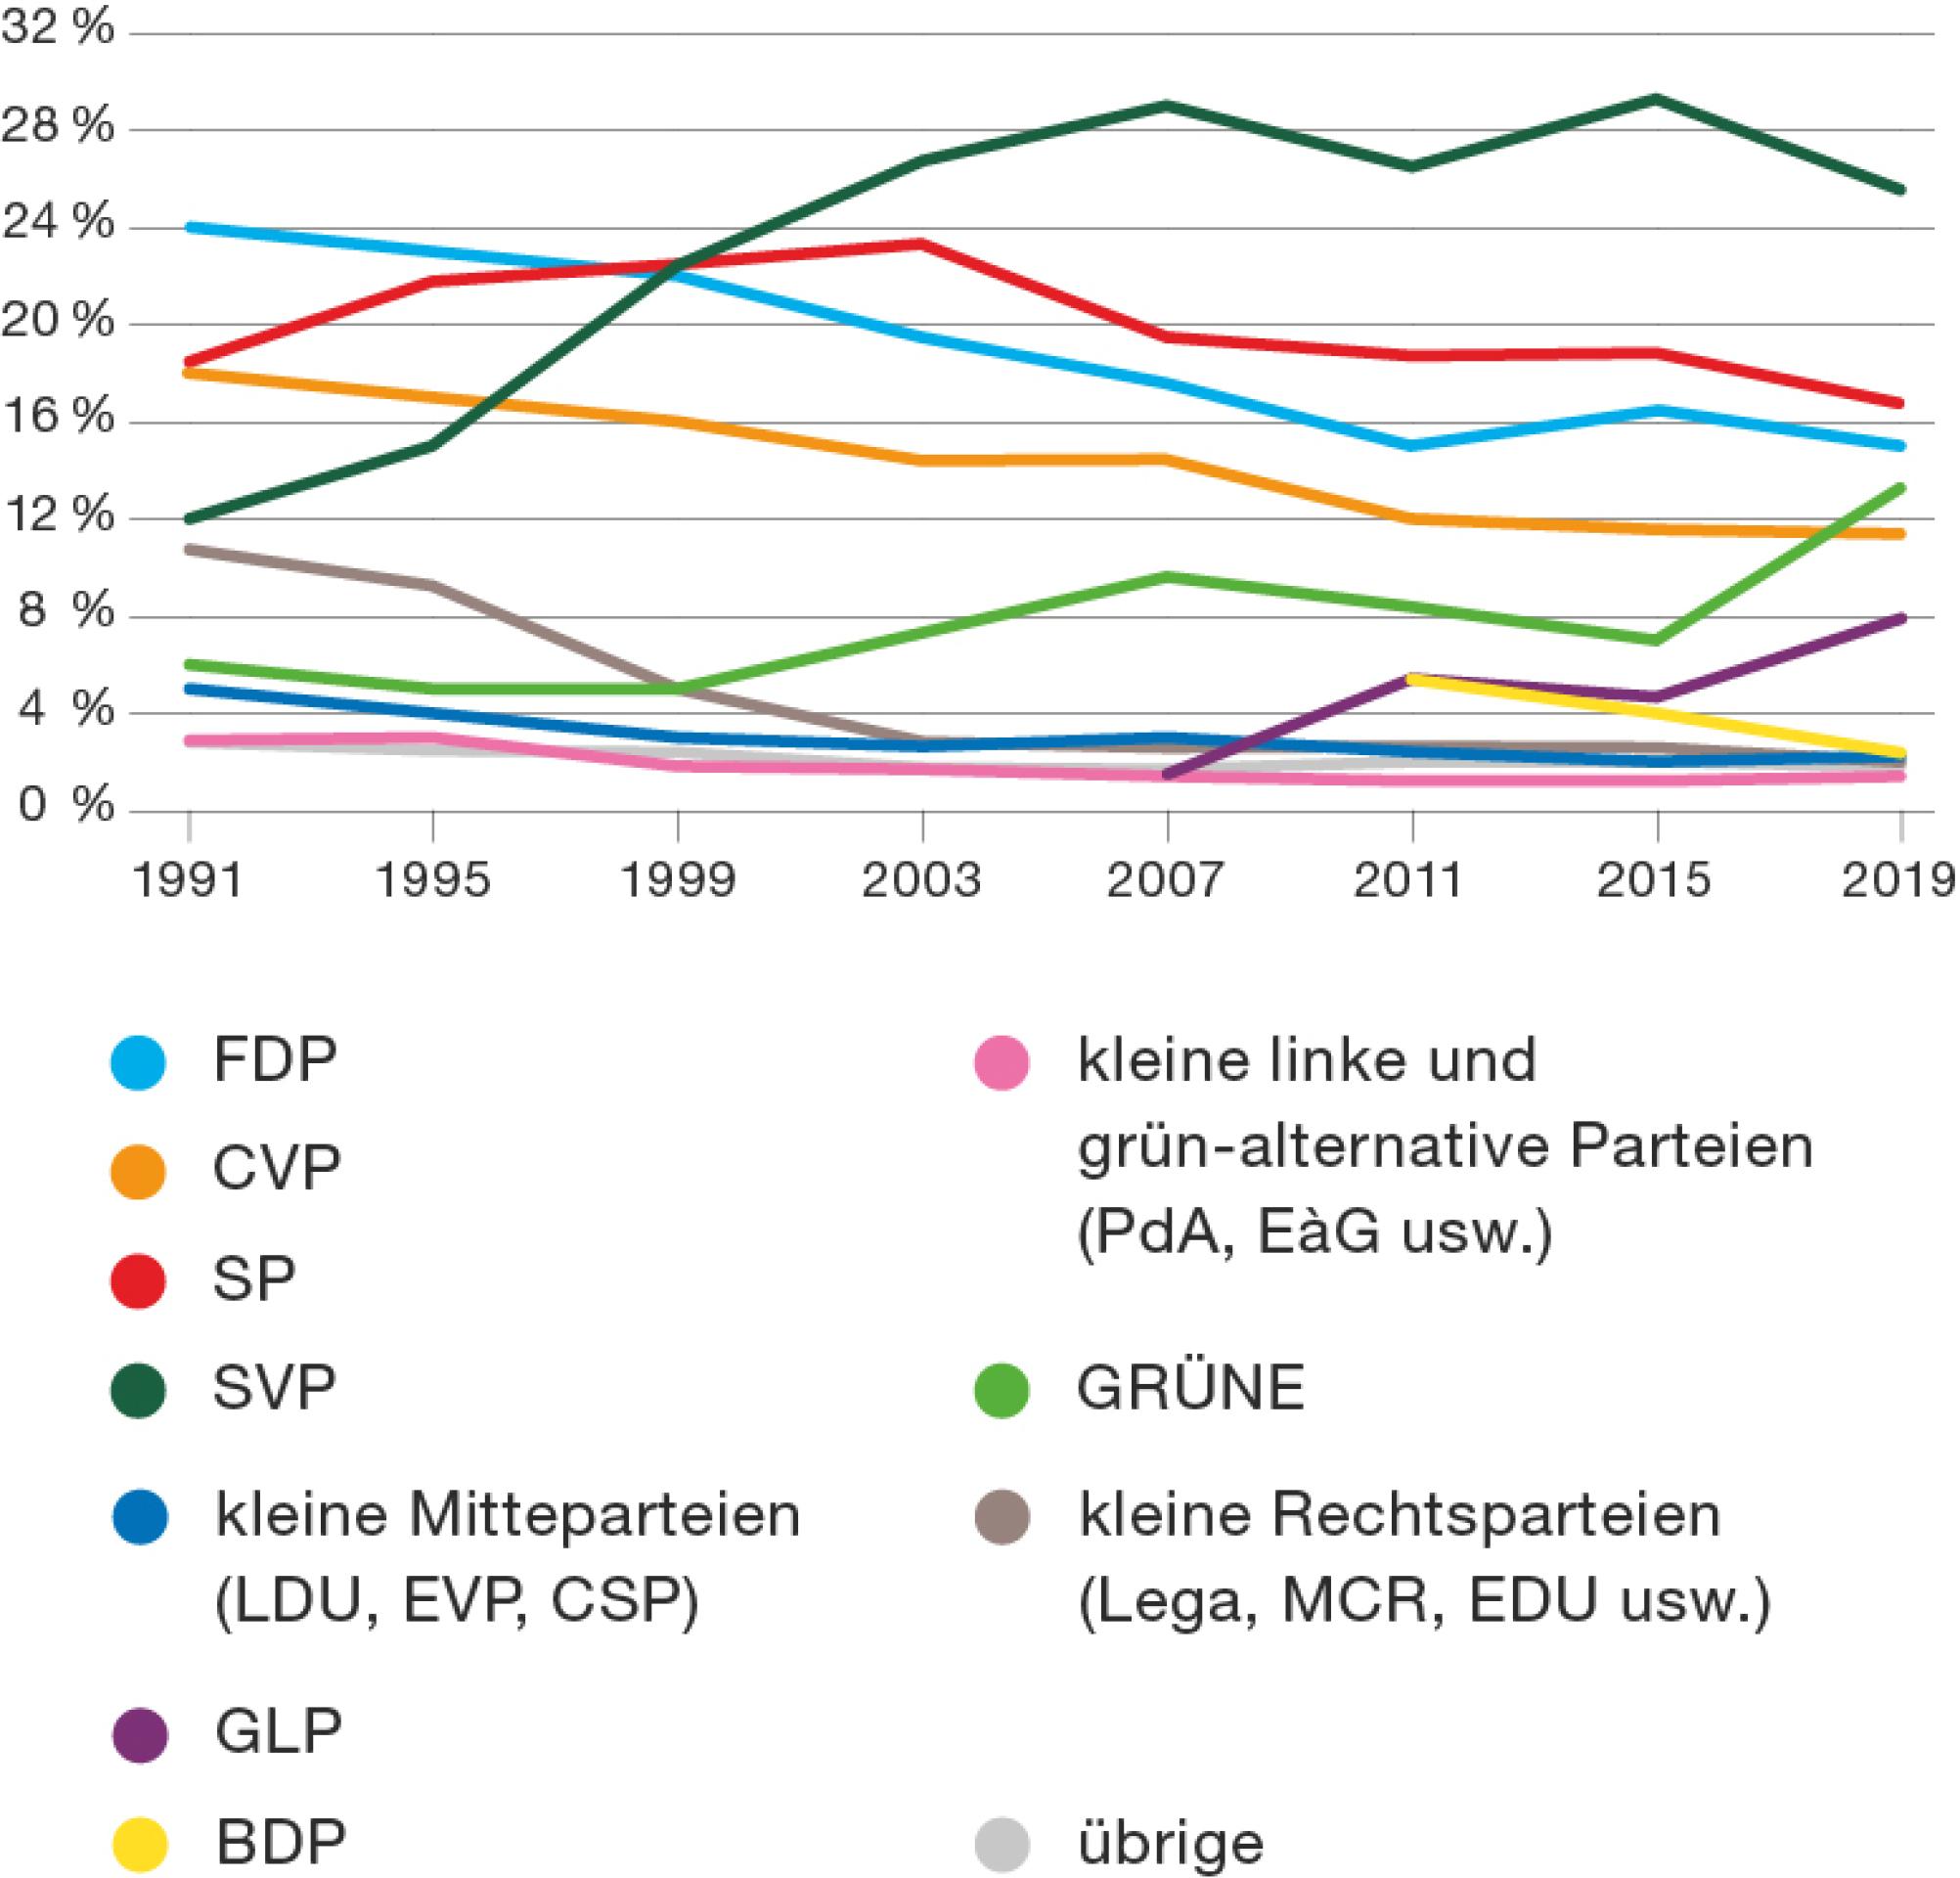 Die Wähleranteile der Parteien bei den Nationalratswahlen und wie sie sich entwickelt haben: 1999 wurde die SVP zur wählerstärksten Partei. Auch die grünen Parteien haben Wähleranteile gewonnen. Die andern Parteien hingegen haben Wähleranteile verloren.